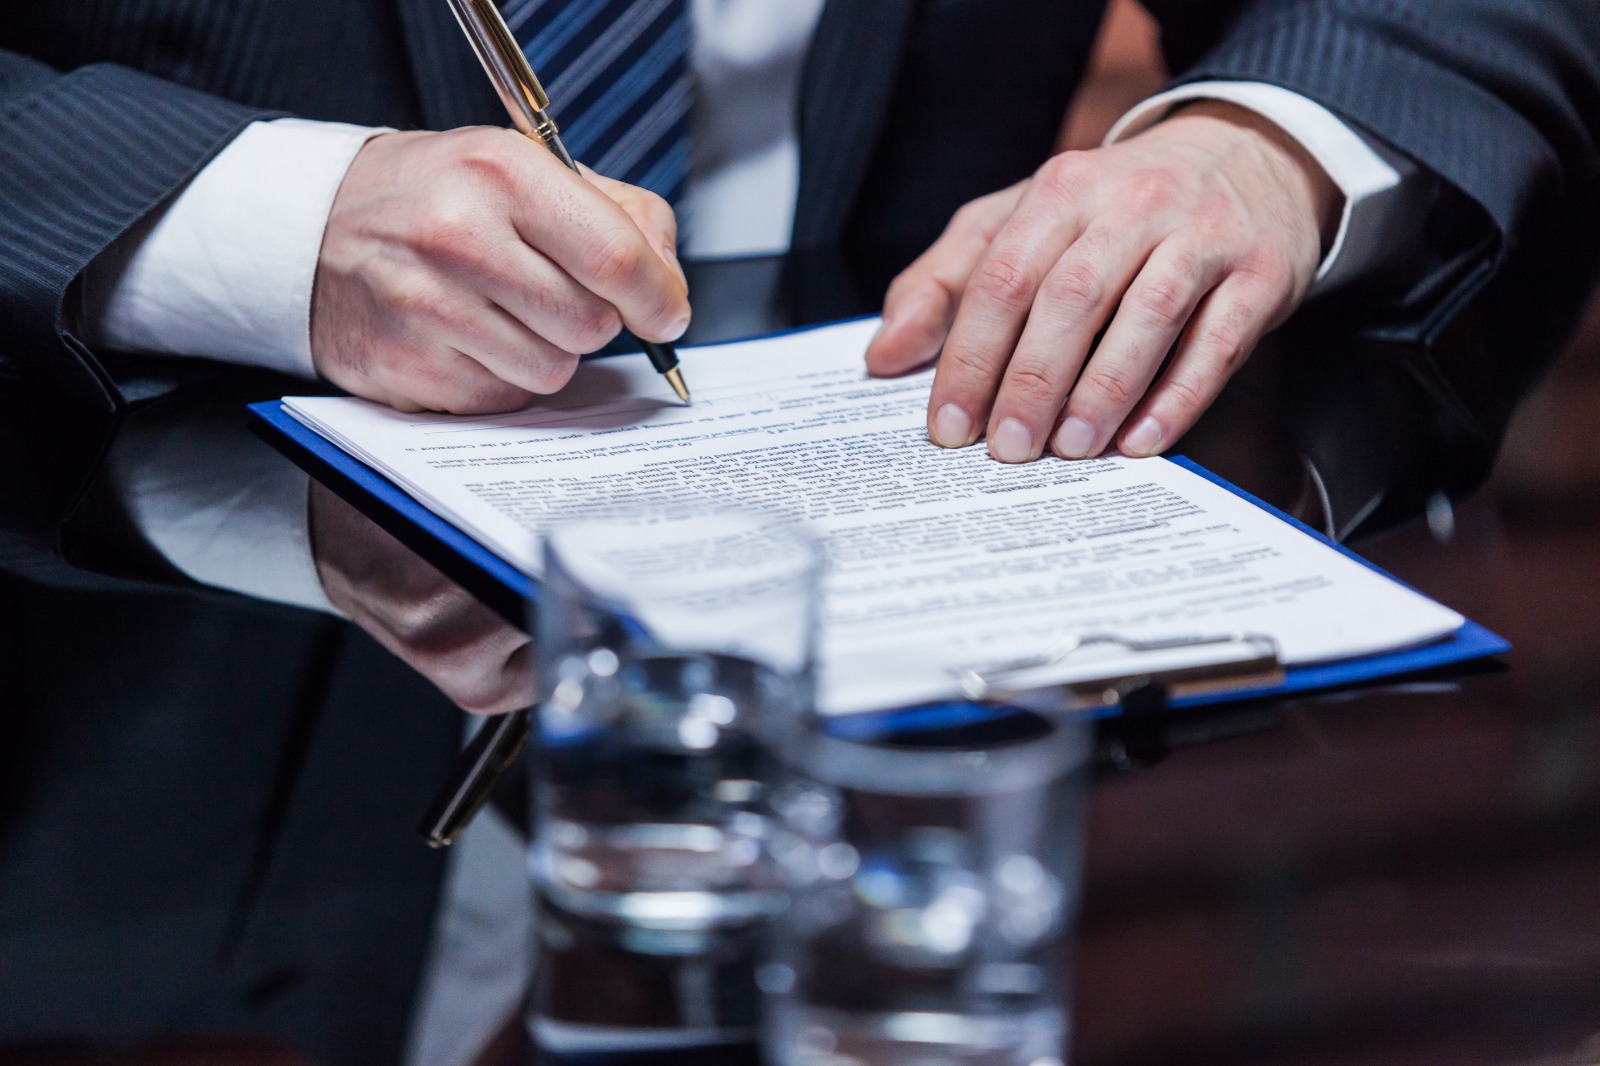 Imagem de um homem, vestido com terno e gravata e sem aparecer o rosto, sentado, assinando um documento que está sobre a mesa.